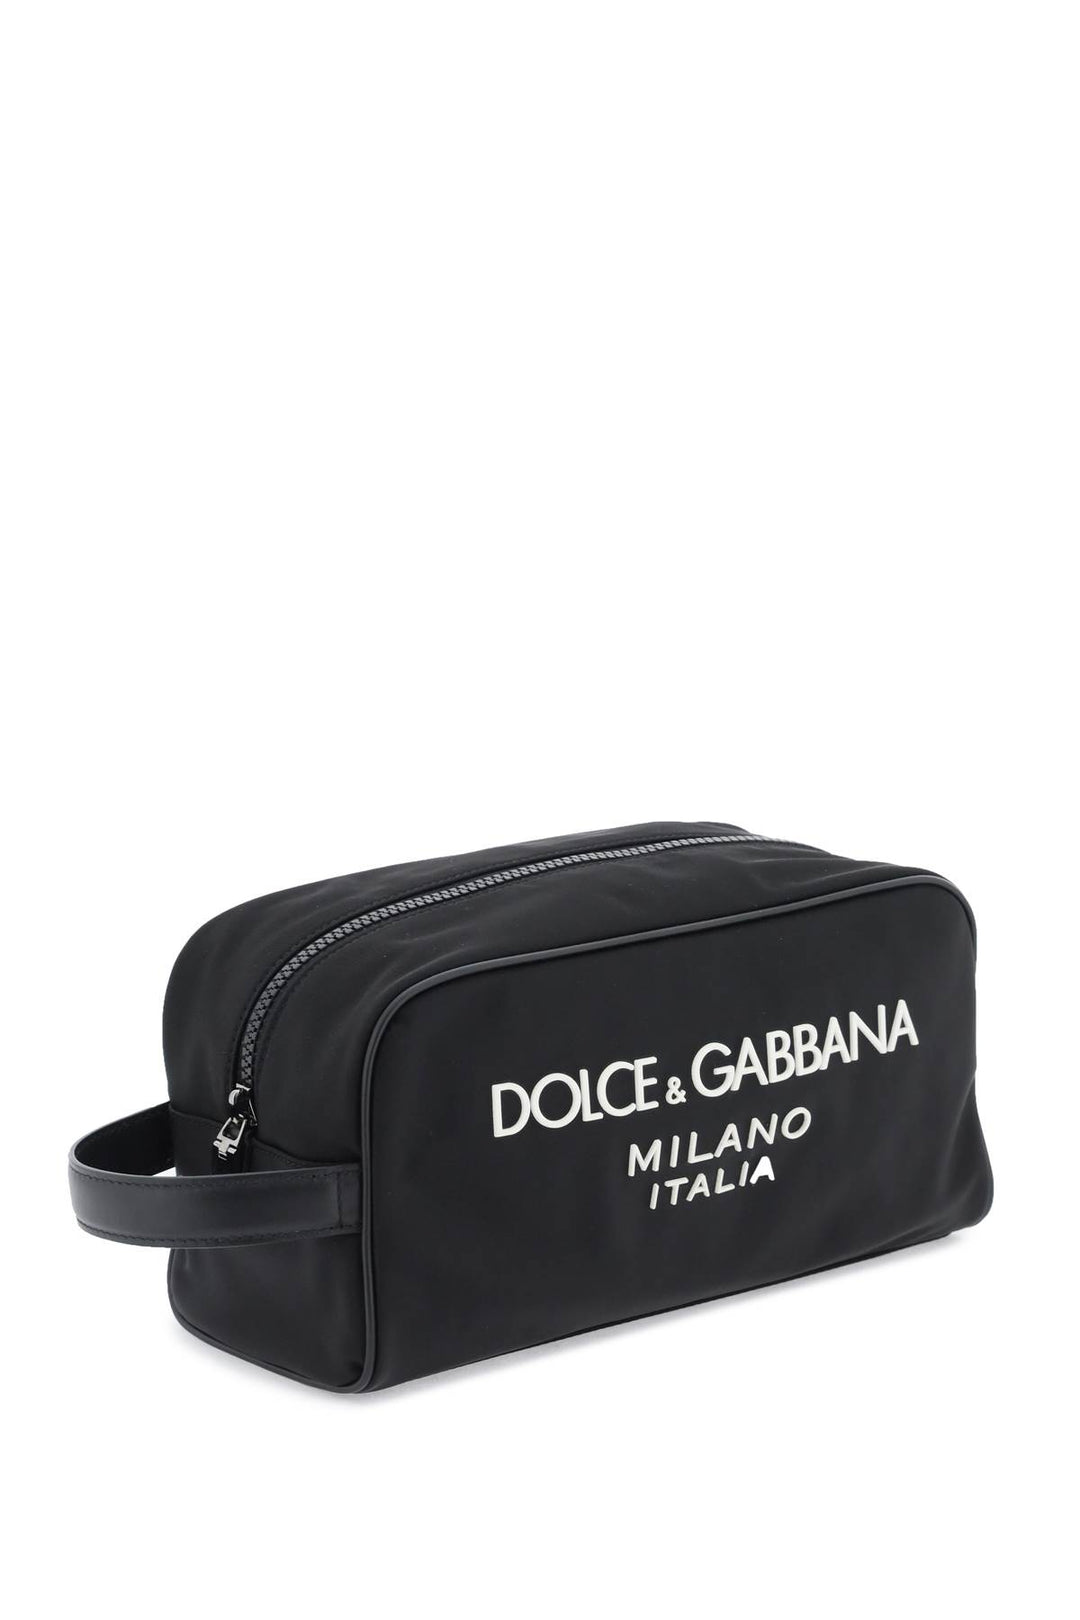 Dolce & Gabbana Rubberized Logo Beauty Case   Nero